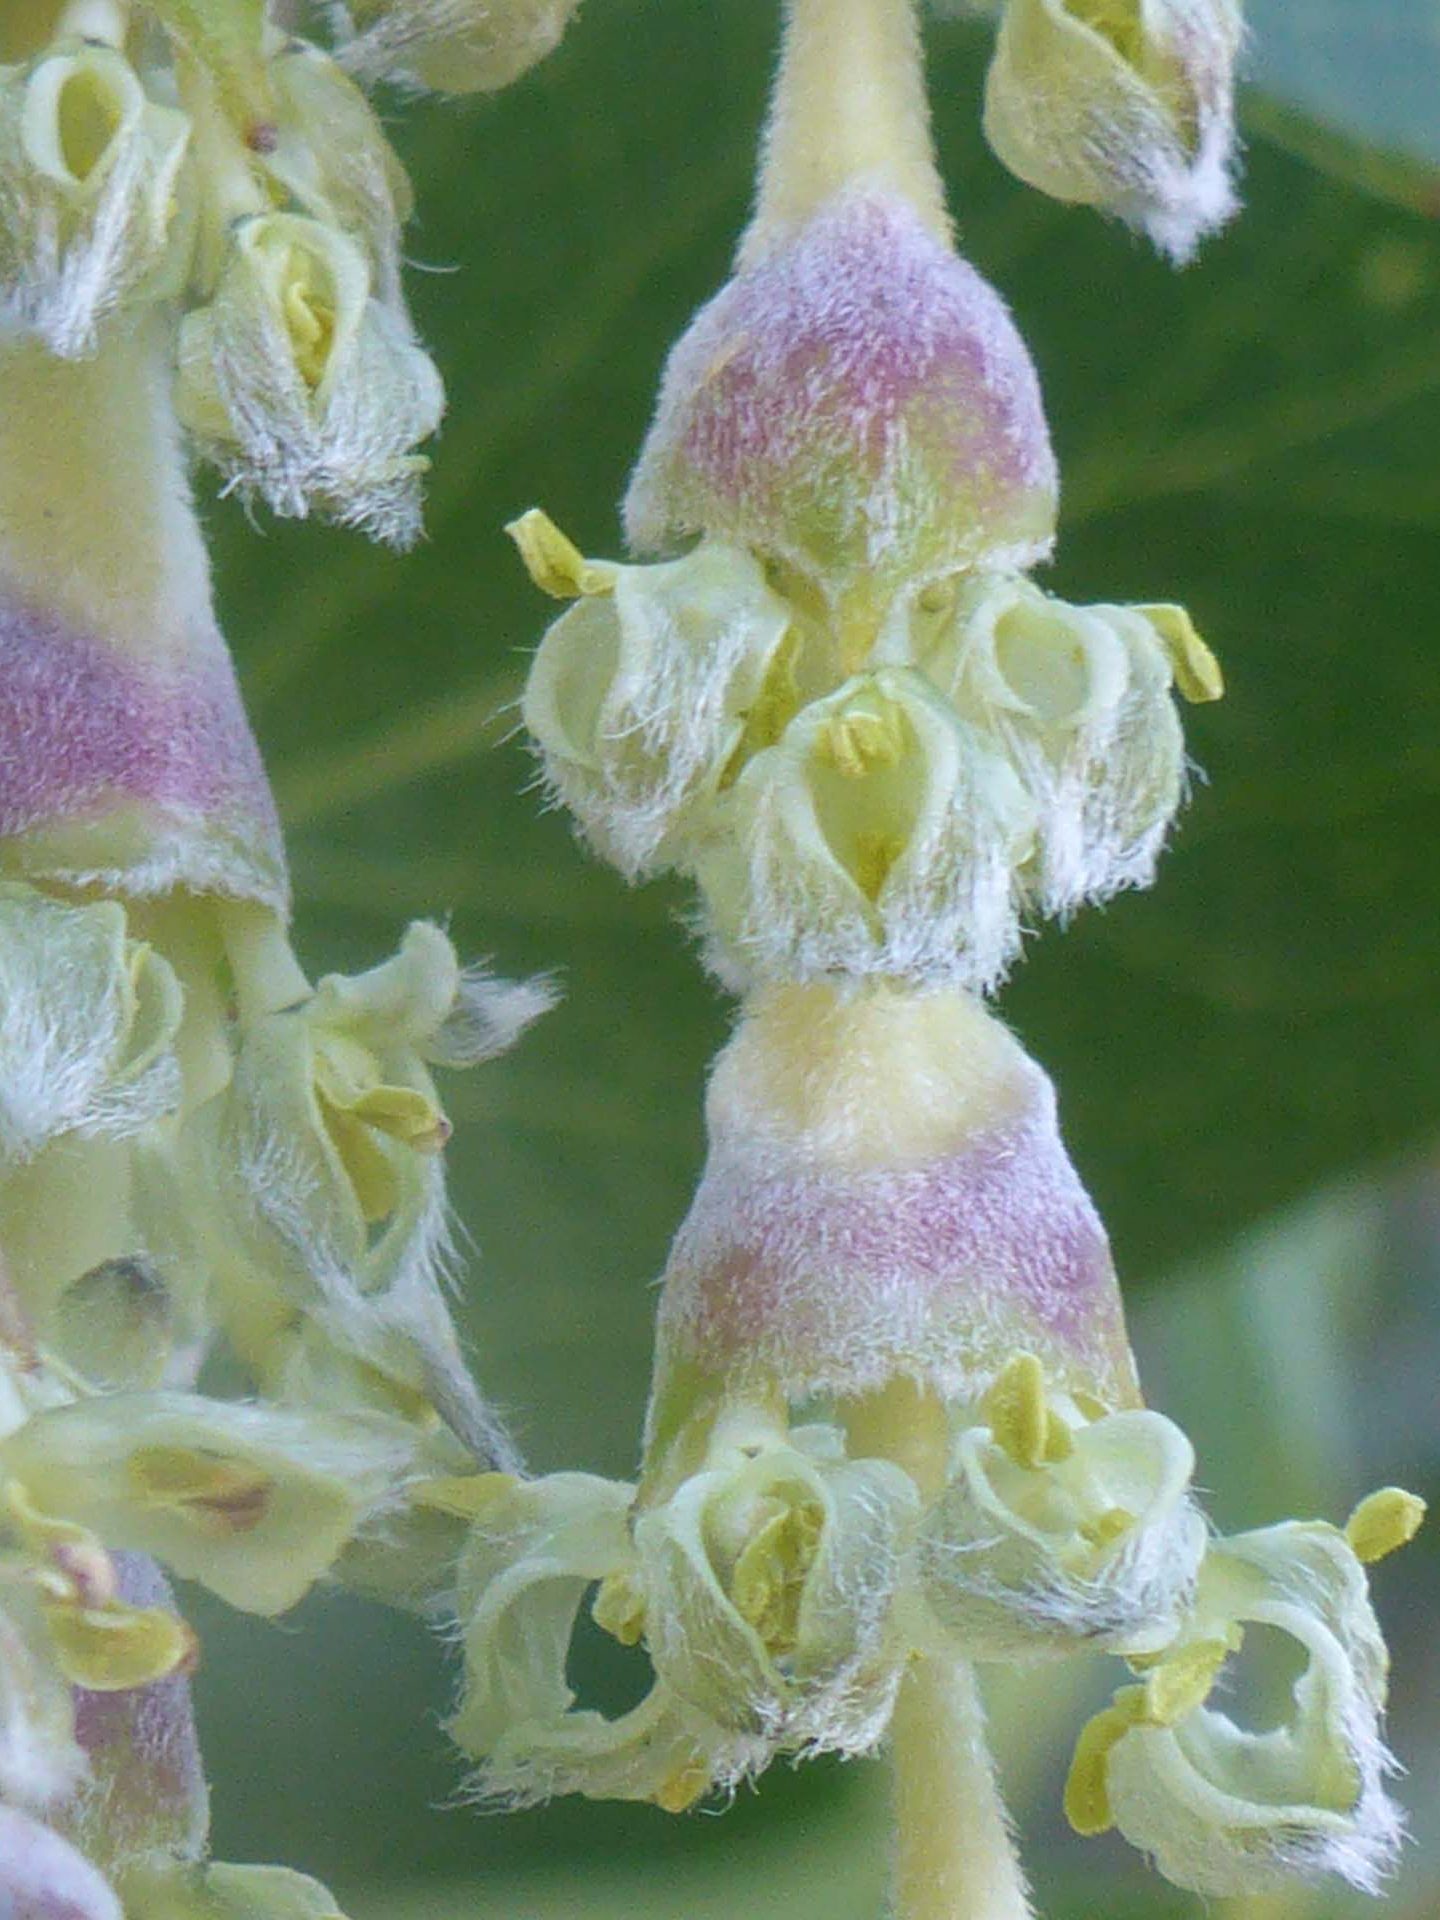 Silk tassel flower close-up. D. Burk.